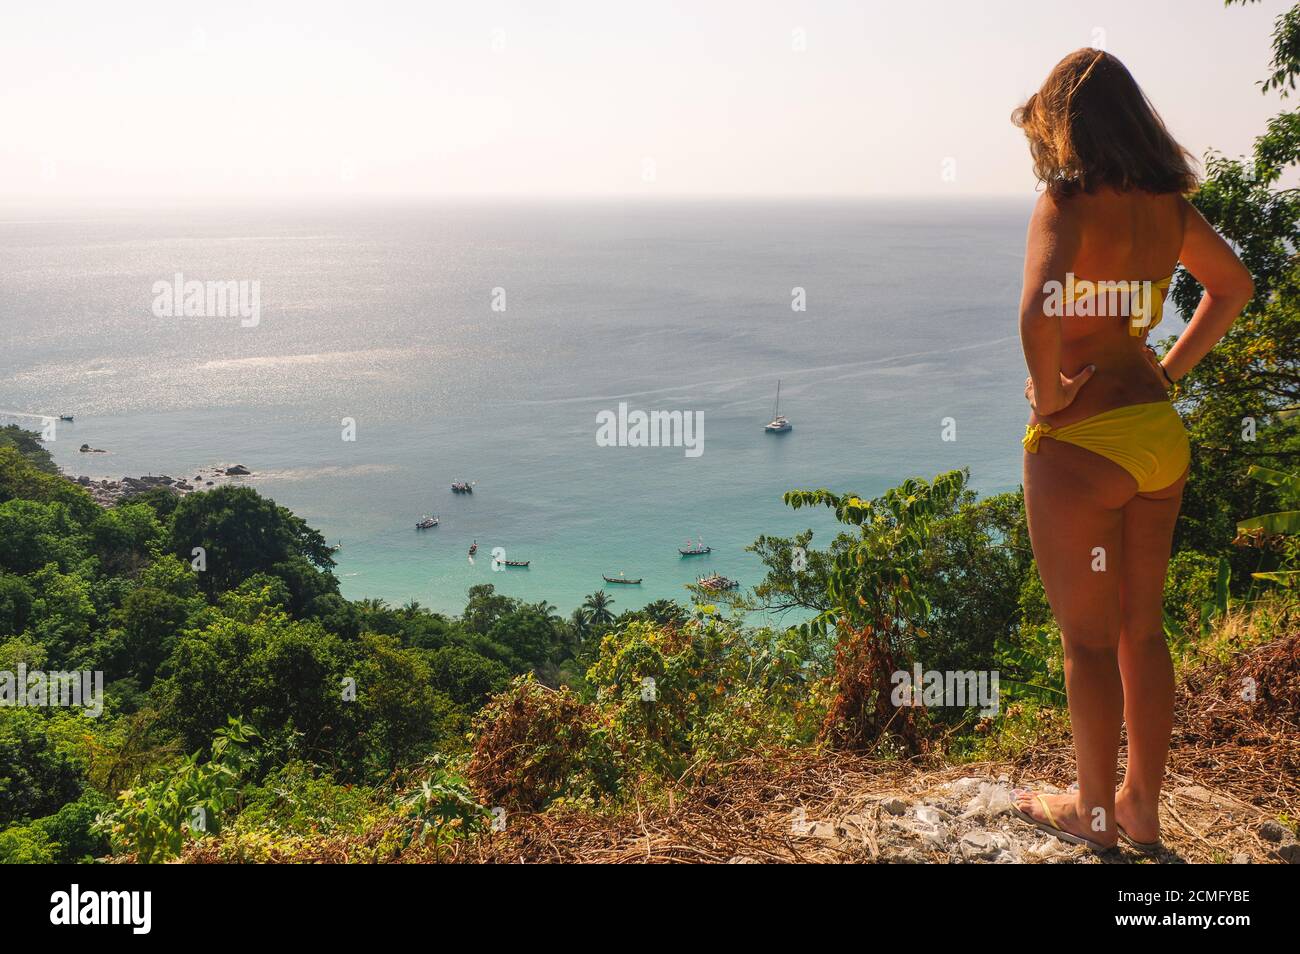 La jeune femme en bikini se tient sur une colline et regarde au-dessus de la plage de Seahaore avec des palmiers. Détendez-vous Banque D'Images